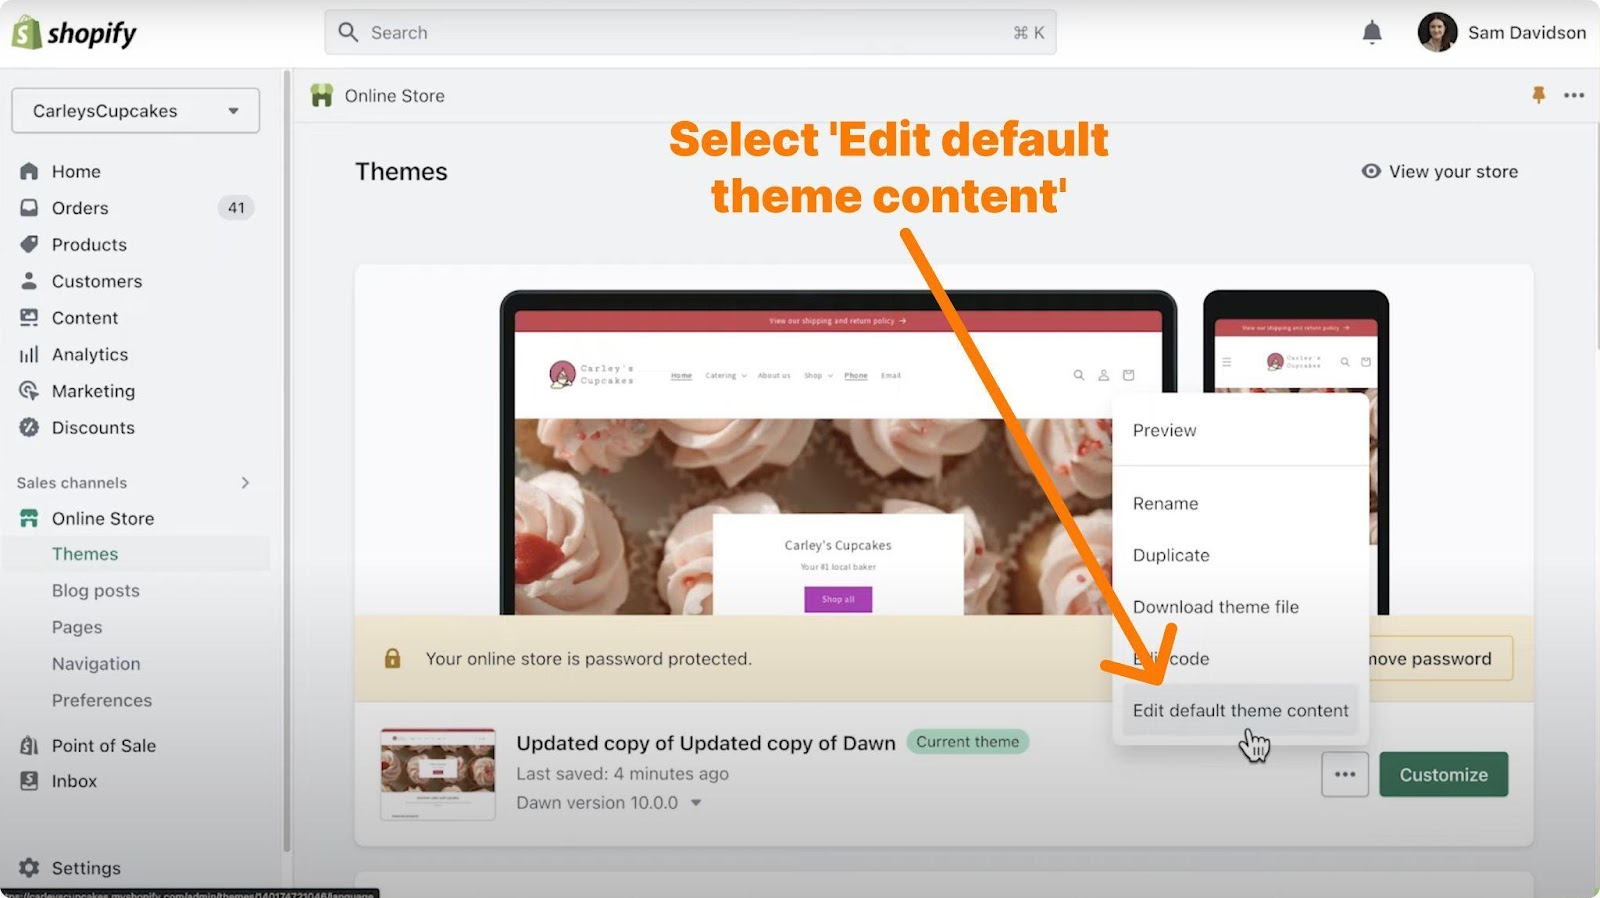 Select “Edit default theme content”.